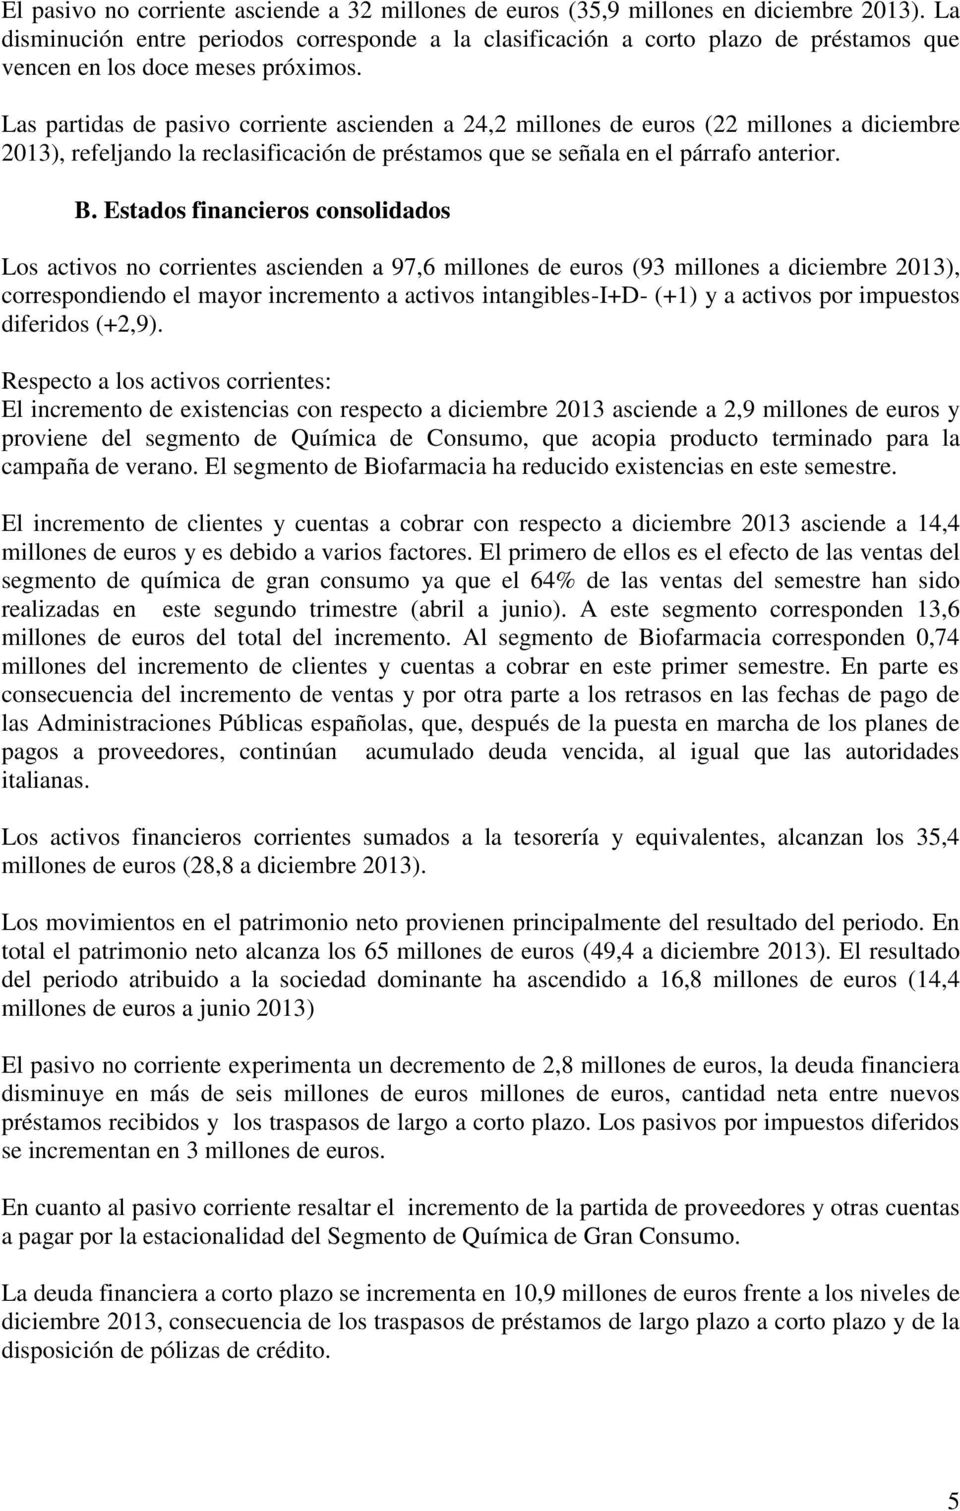 Las partidas de pasivo corriente ascienden a 24,2 millones de euros (22 millones a diciembre 2013), refeljando la reclasificación de préstamos que se señala en el párrafo anterior. B.